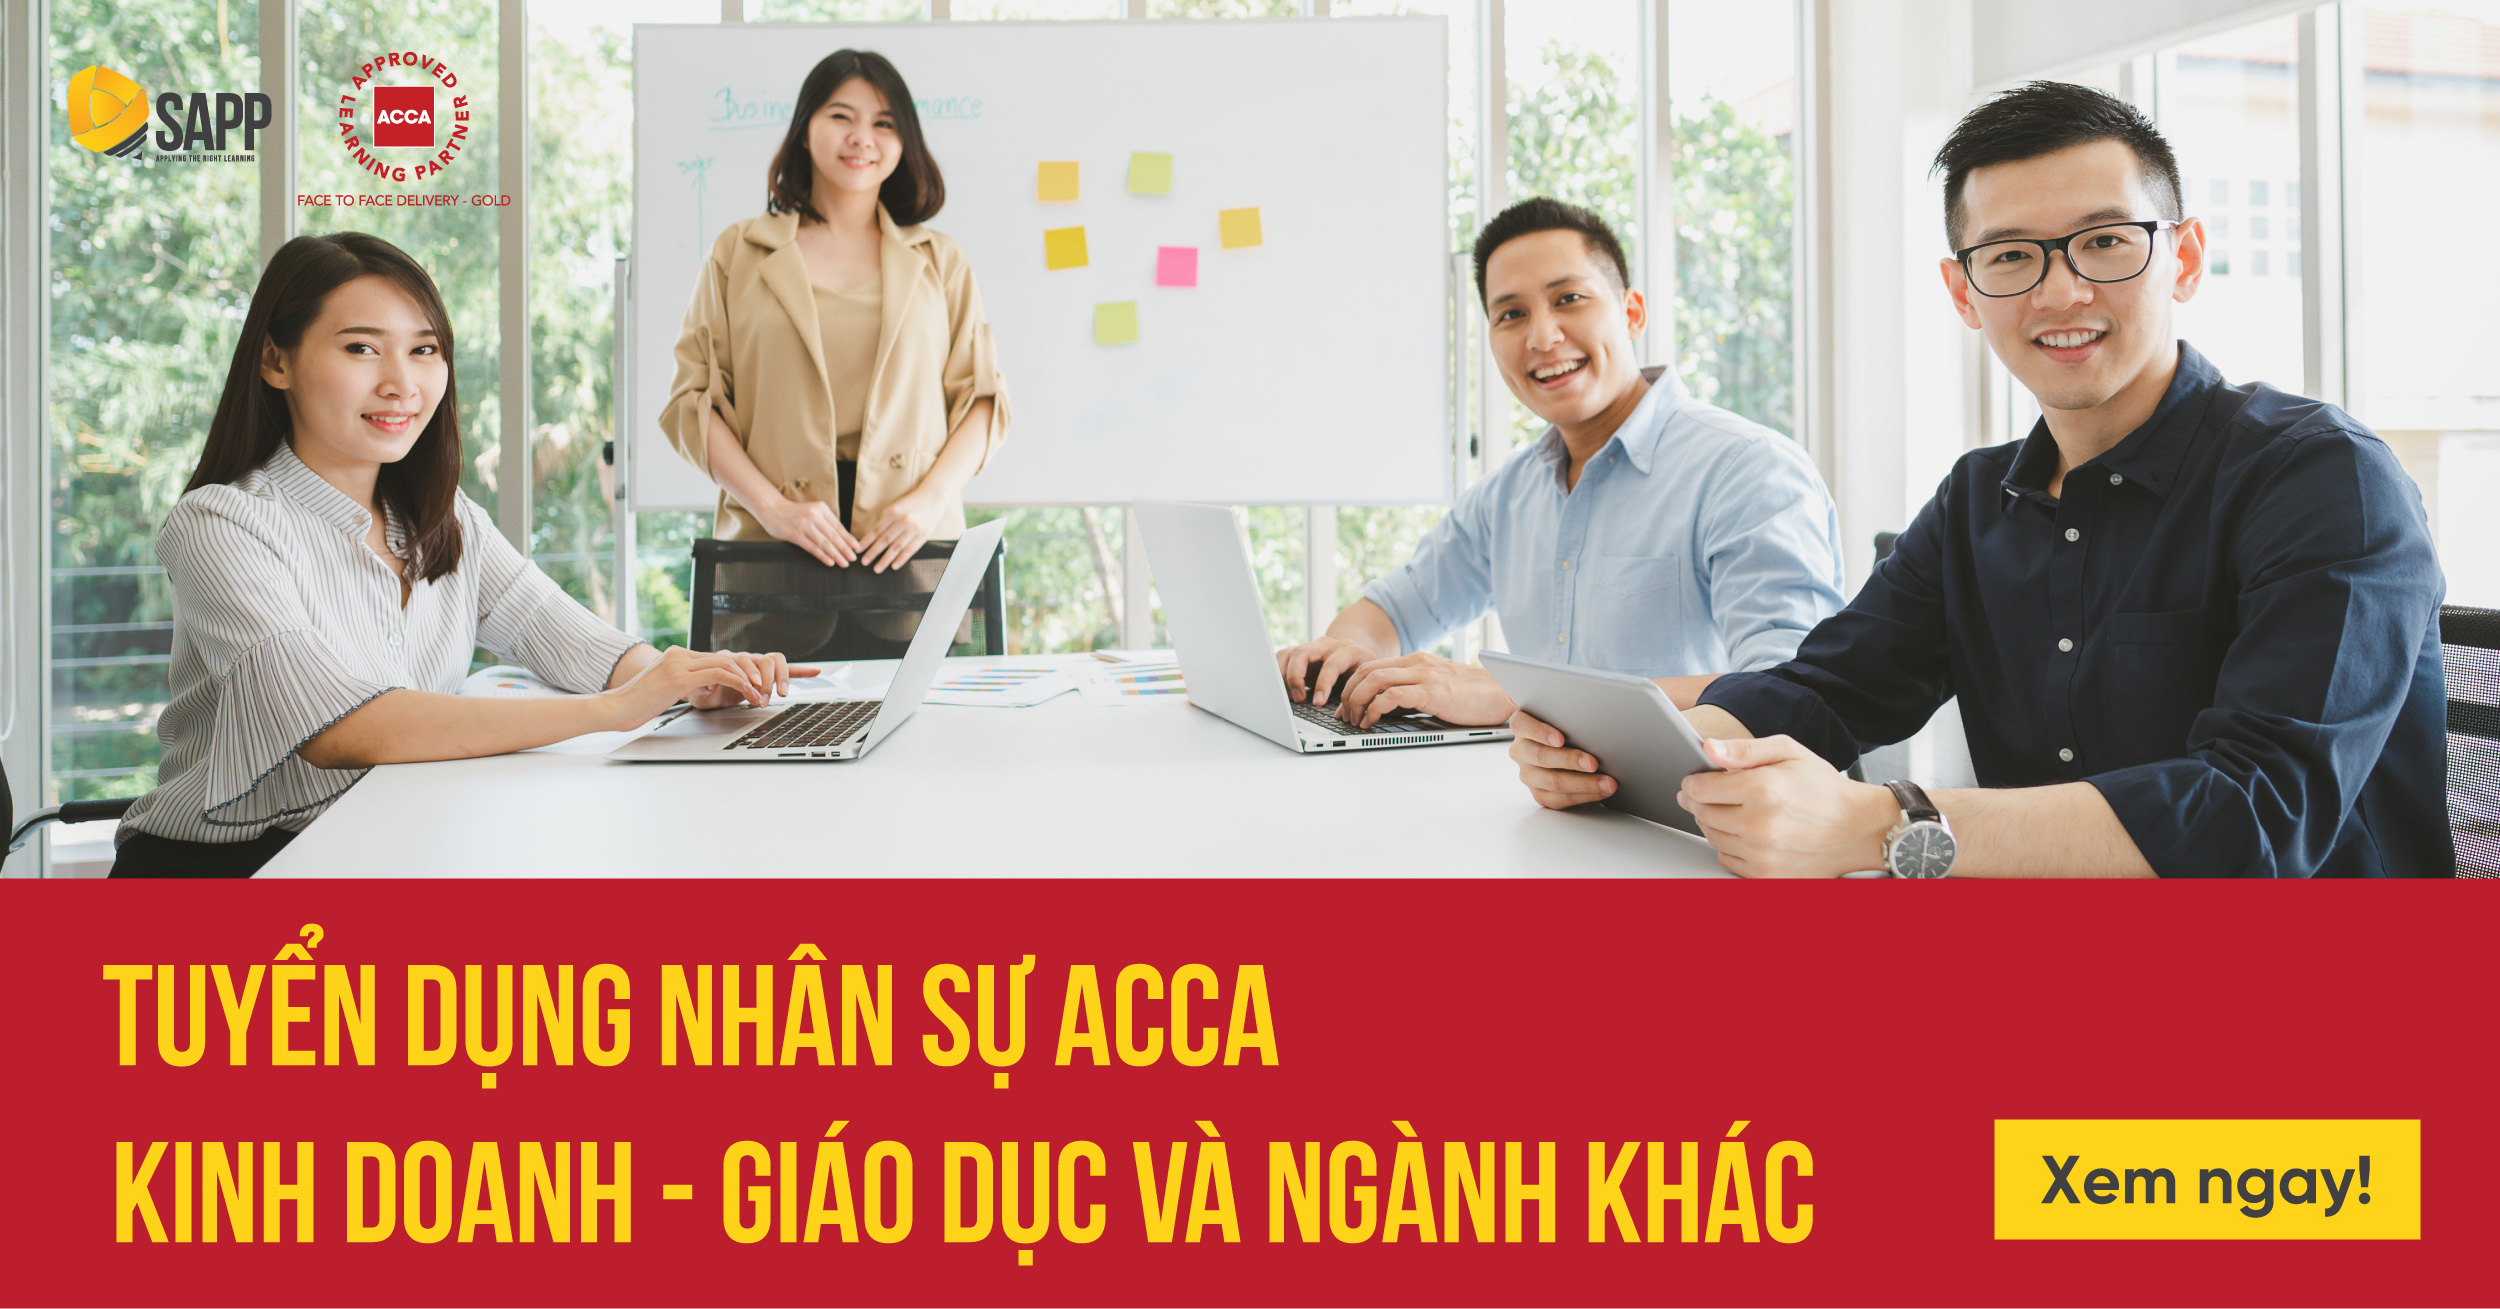 Tuyển dụng Nhân sự ACCA ngành Kinh doanh, Giáo dục và ngành khác (Cập nhật T4/2022)